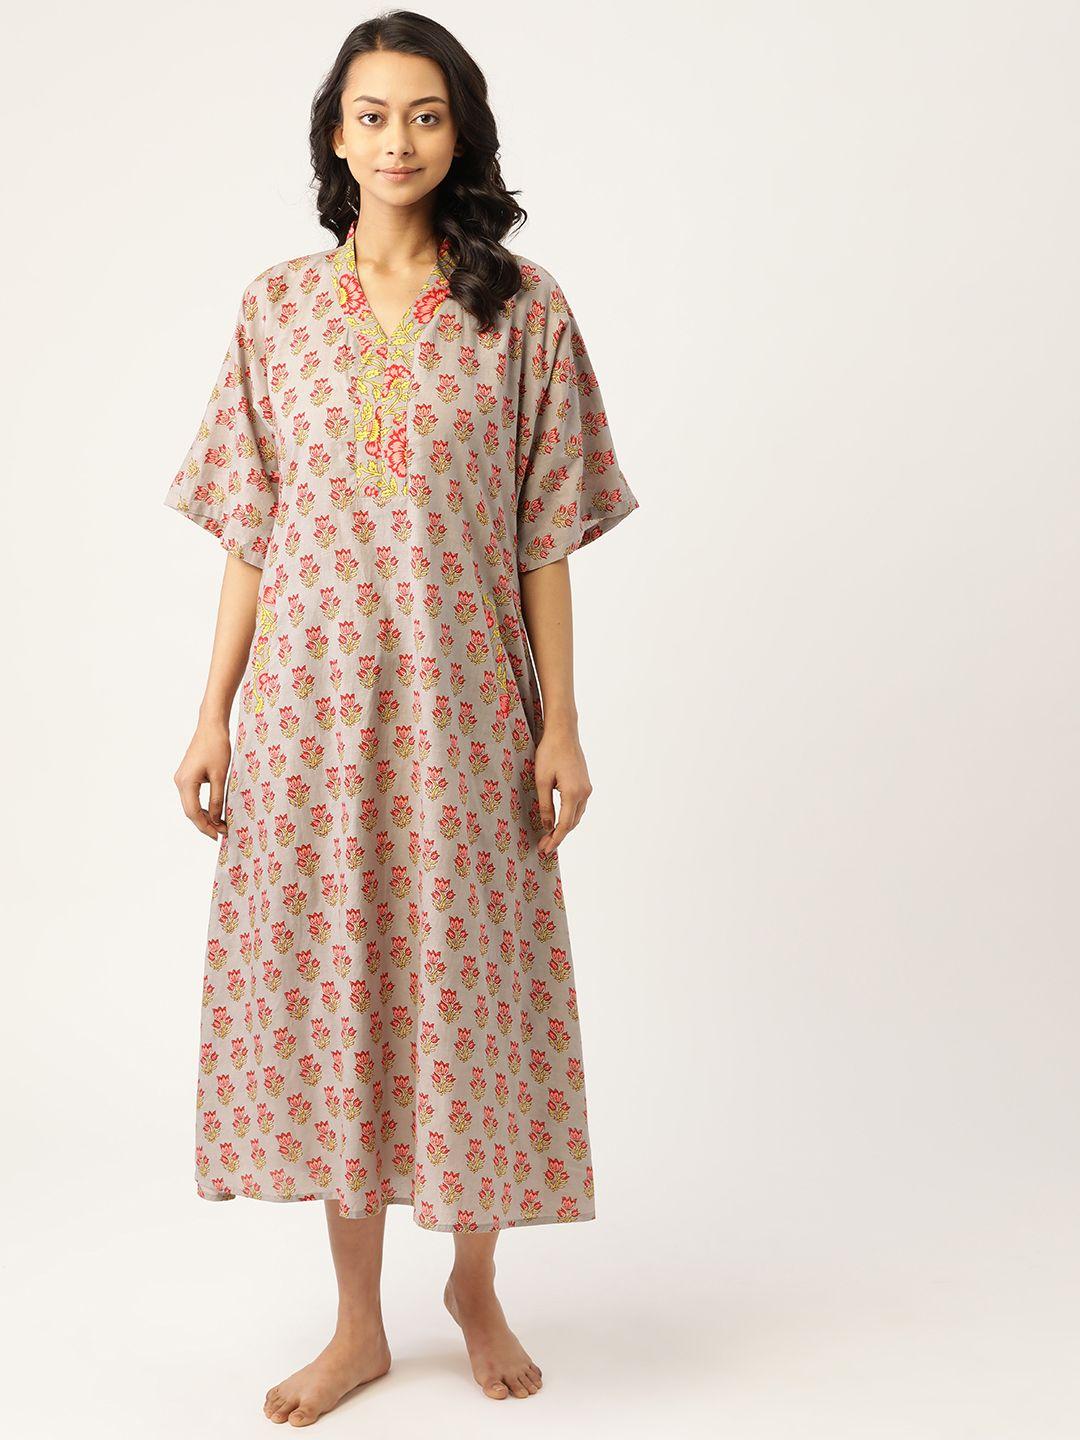 mabish by sonal jain taupe & pink ethnic motifs print pure cotton midi nightdress